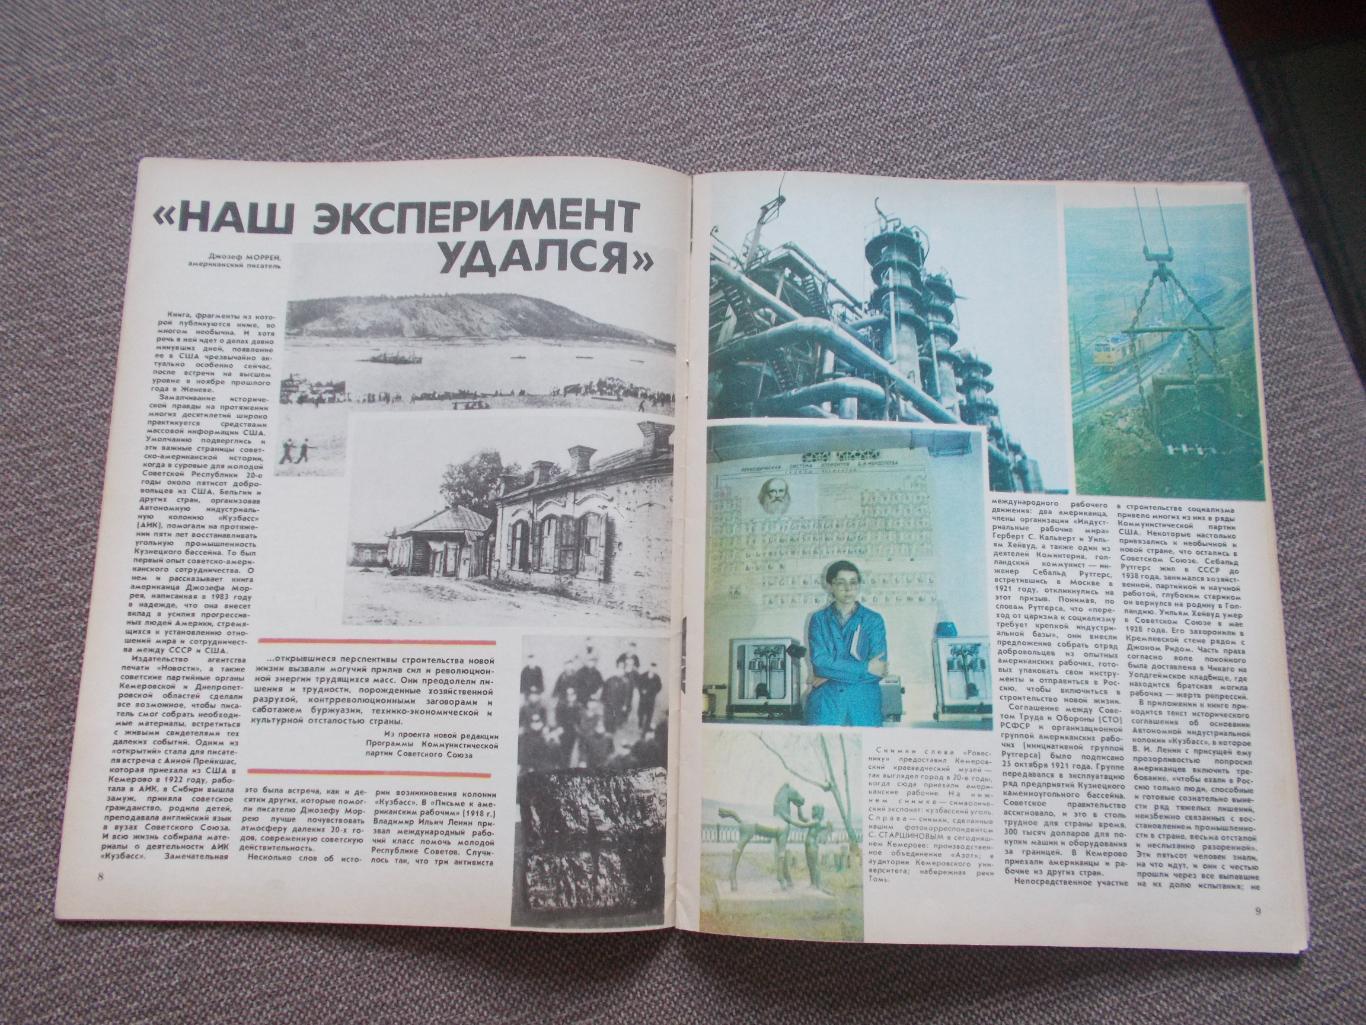 Журнал СССР :Ровесник№ 2 (февраль) 1986 г. (Молодежный музыкальный журнал) 6